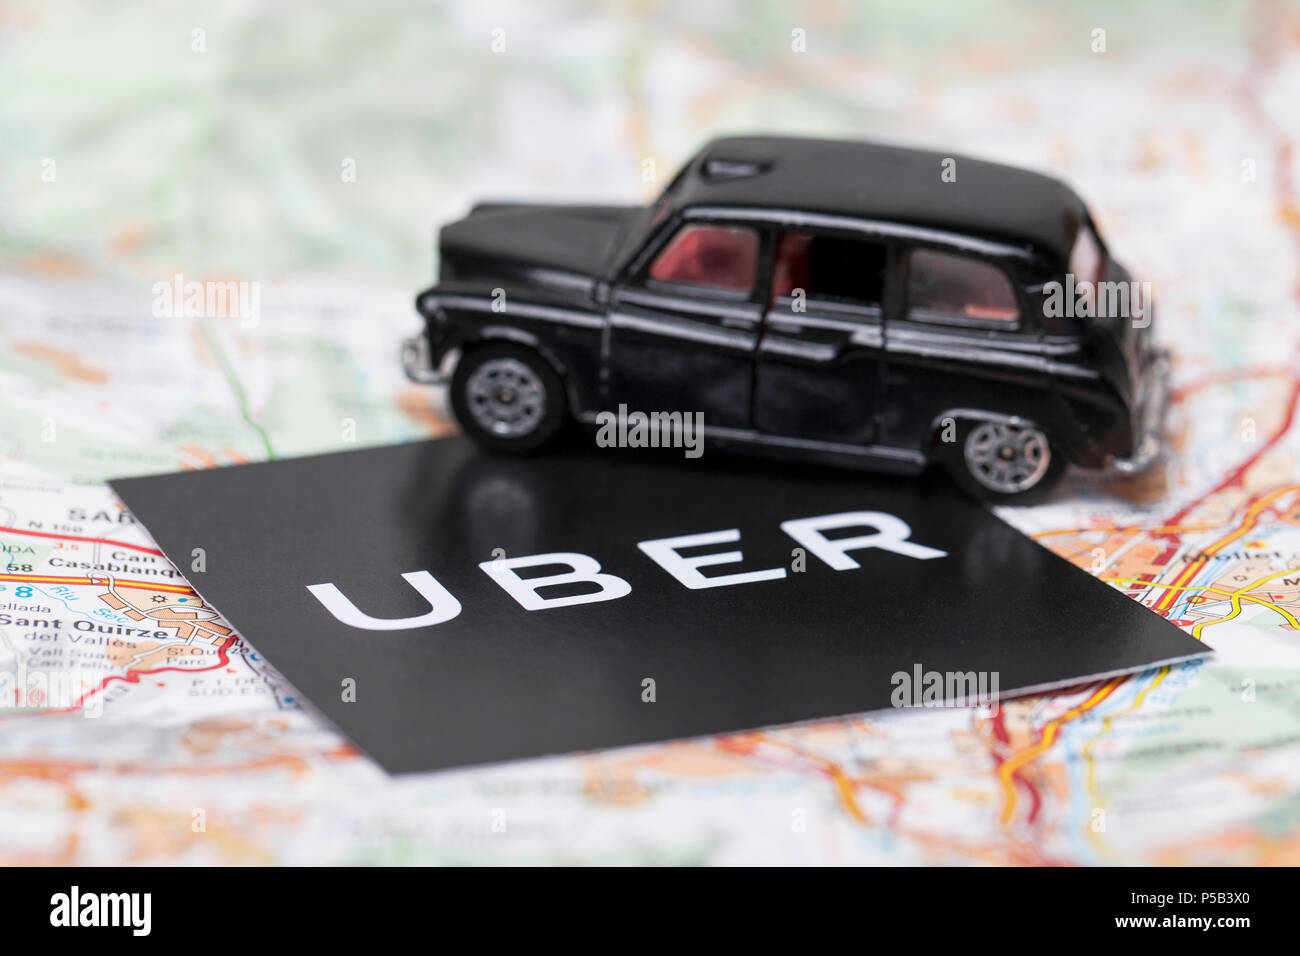 Londres, Reino Unido - 23 de marzo de 2017: Una fotografía de la Uber logotipo con un negro estilo londinense taxi coche de juguete. Uber es un popular servicio de transporte taxi estilo app Foto de stock